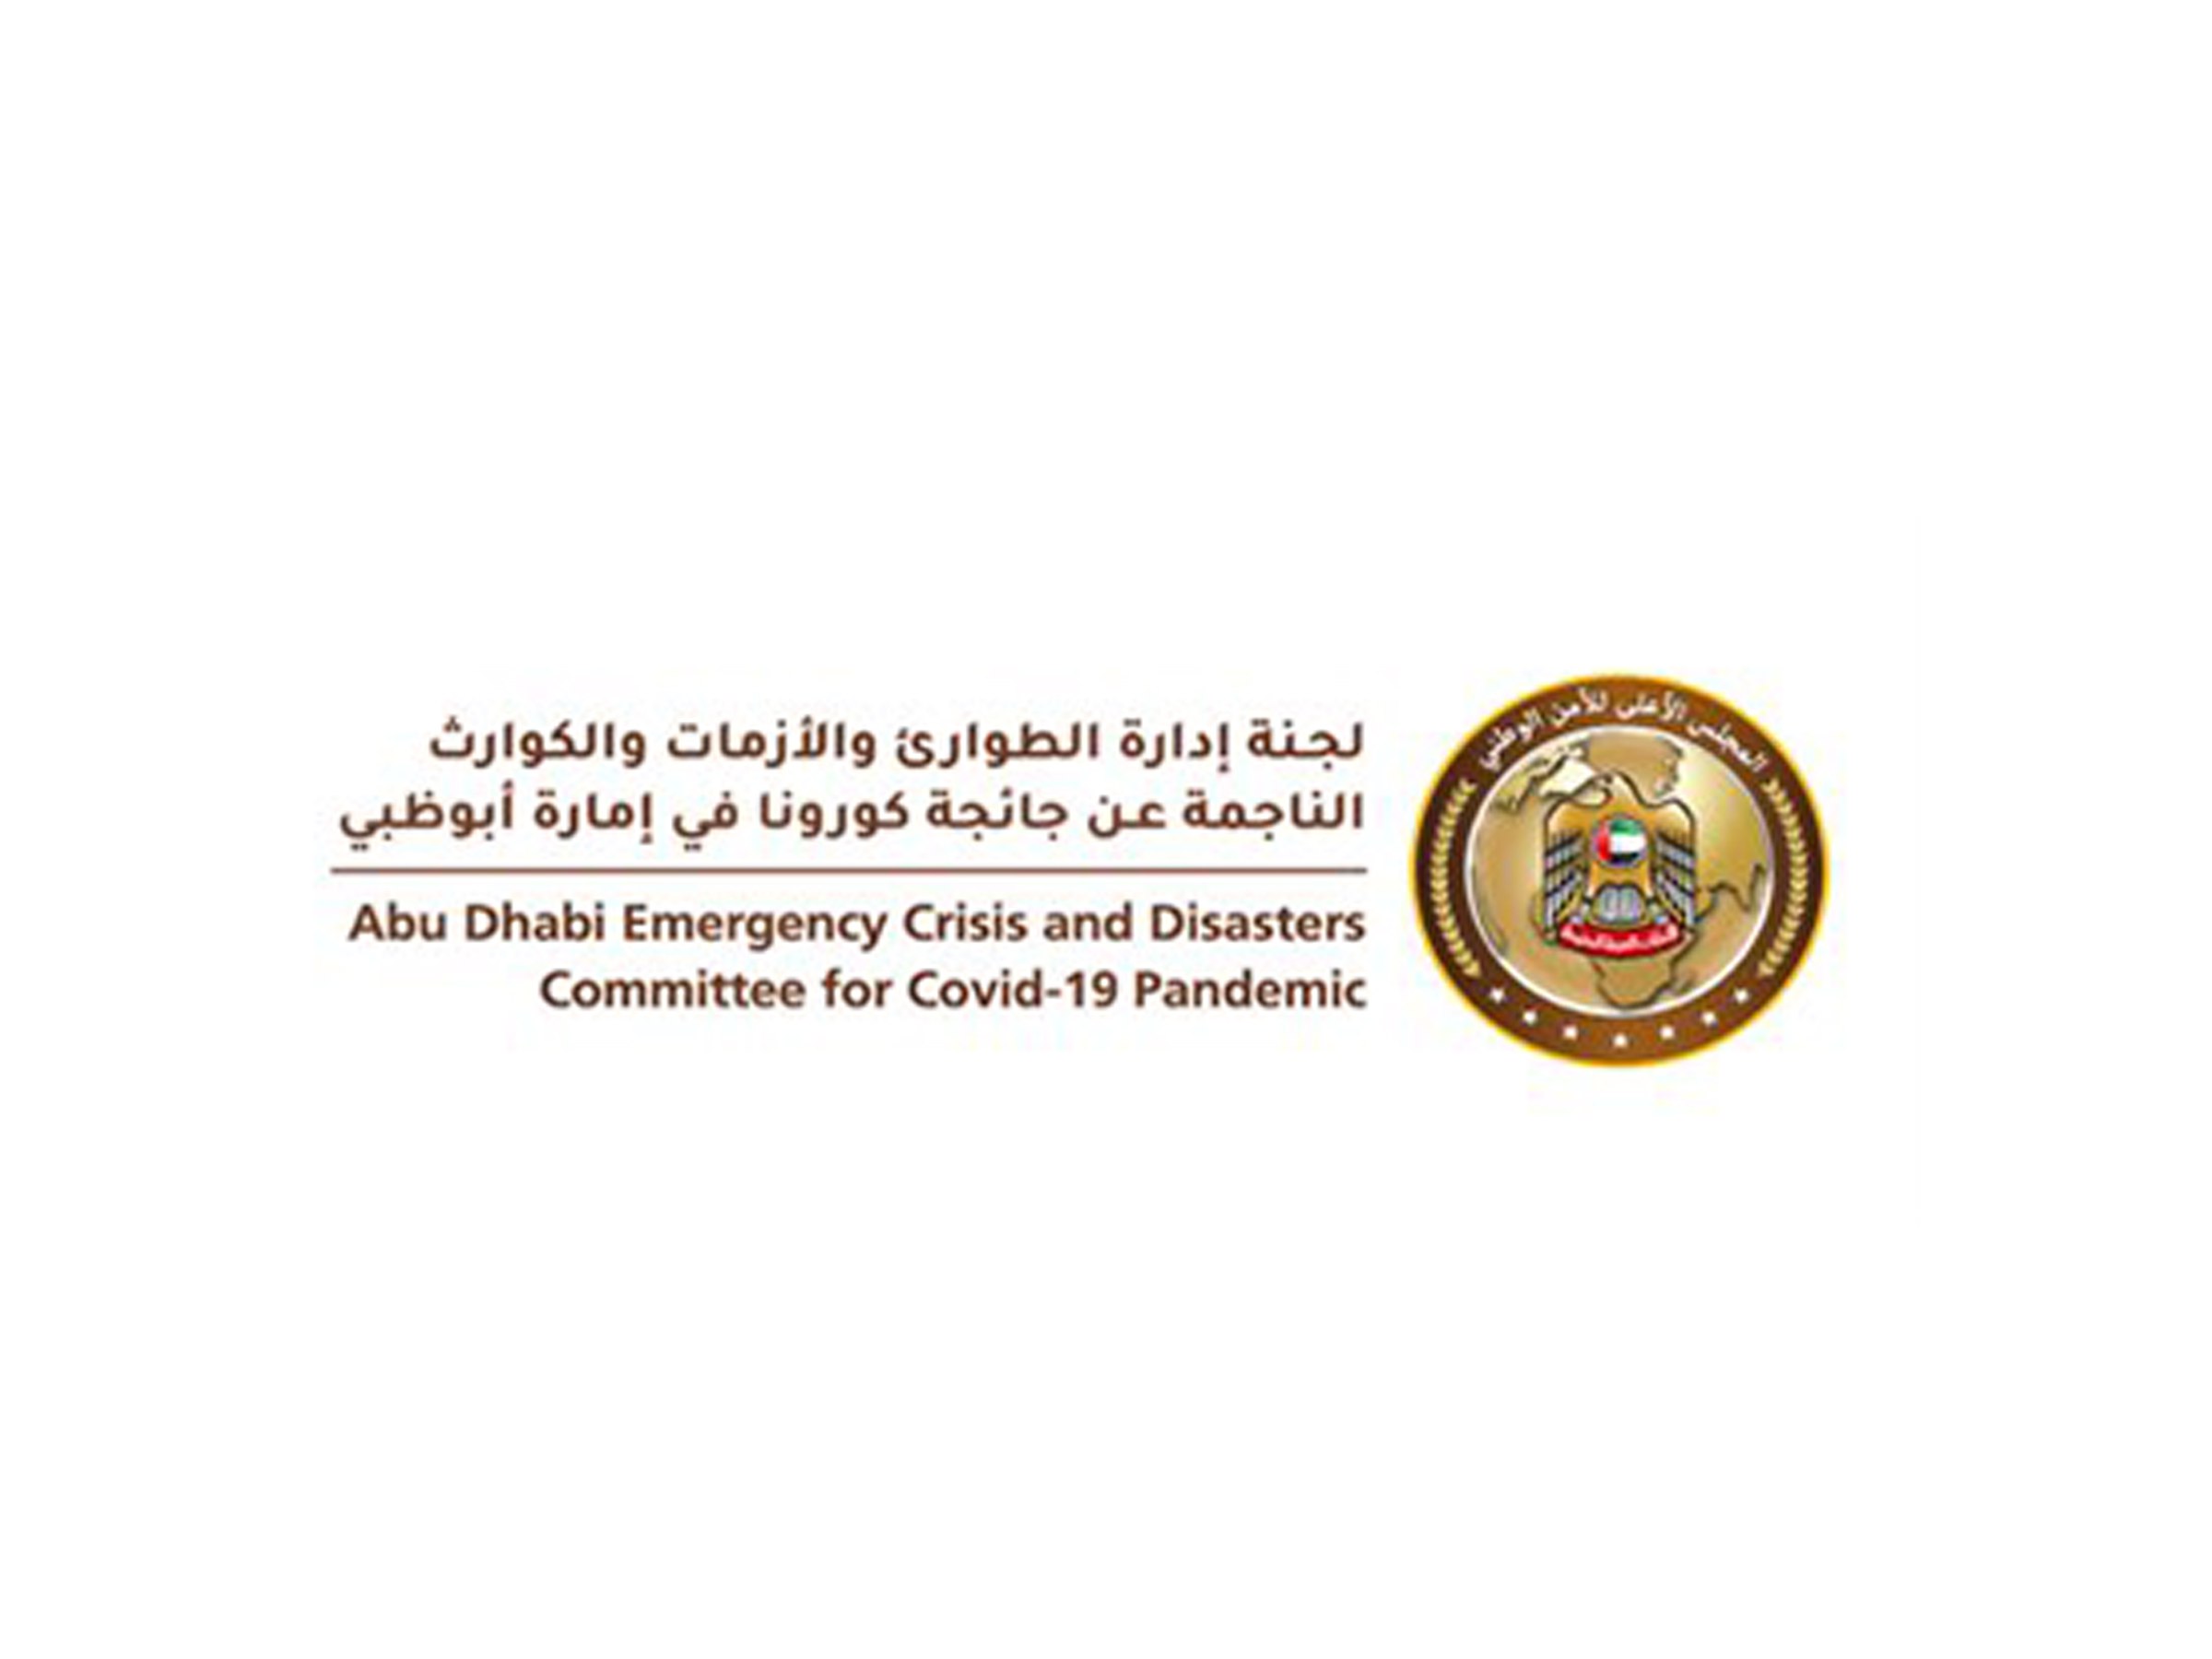 لجنة الطوارئ والأزمات تُحدّث إجراءات دخول أبوظبي من داخل الدولة حسب نوع فحص الدخول